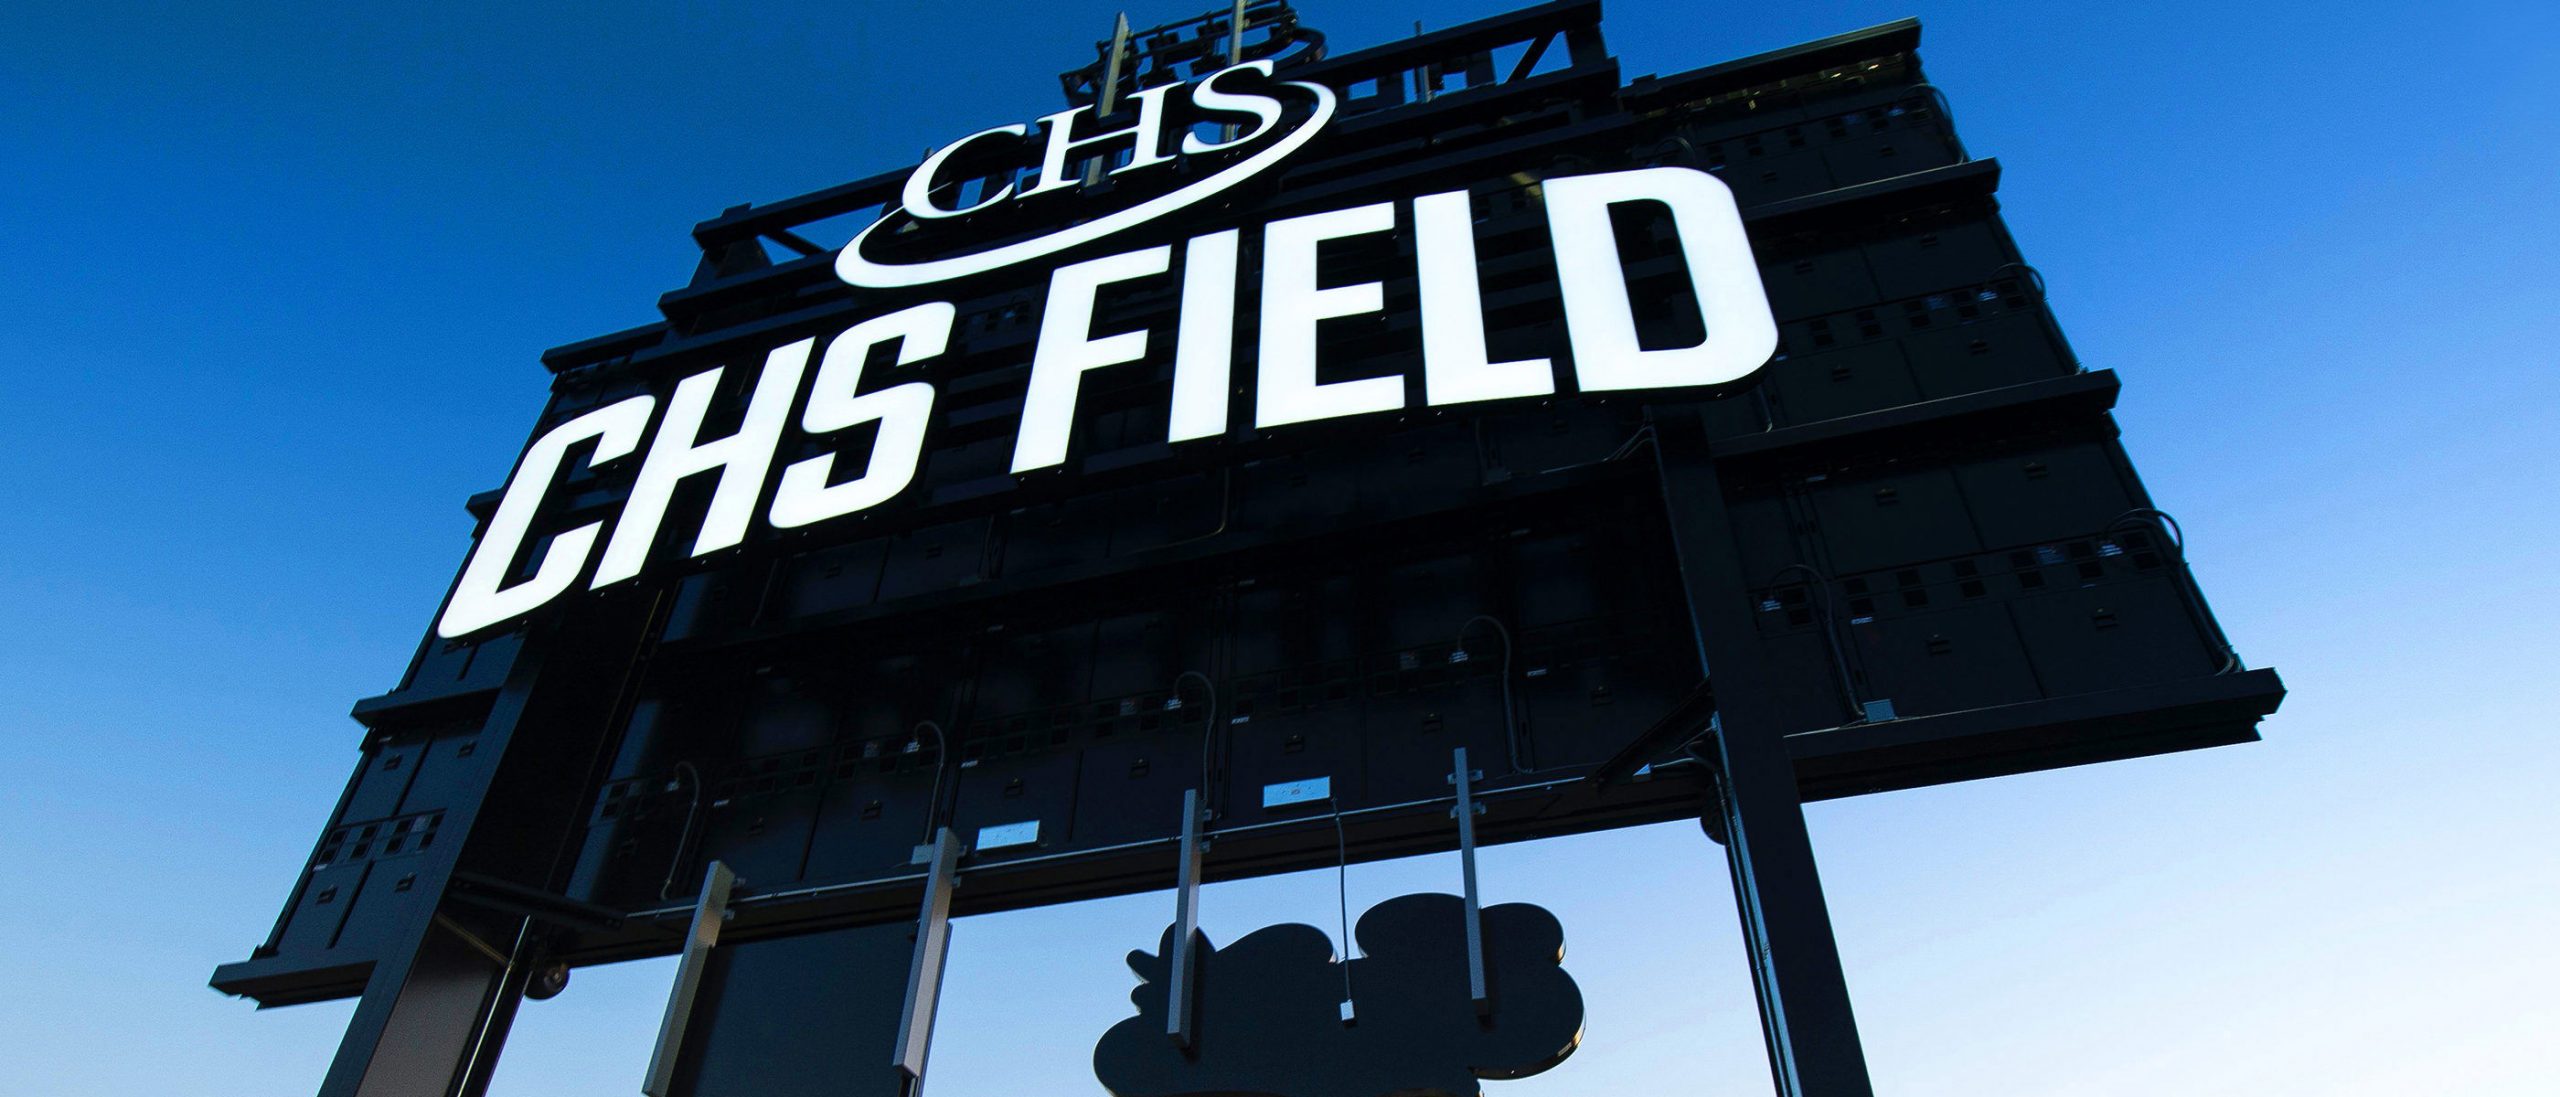 CHS Field_banner